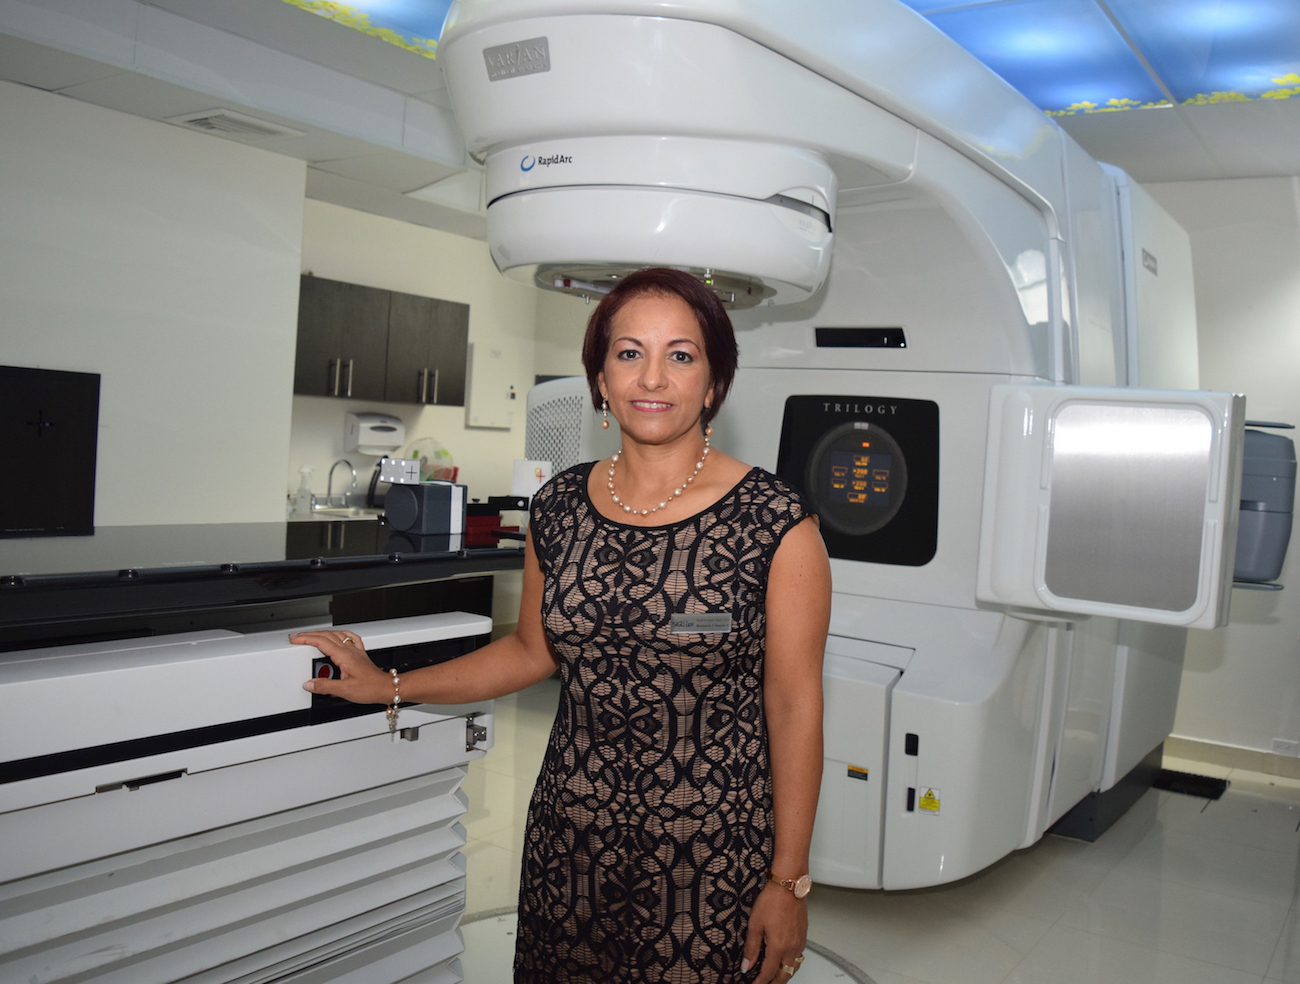 Radioterapia Siglo XXI obtiene certificación internacional de calidad